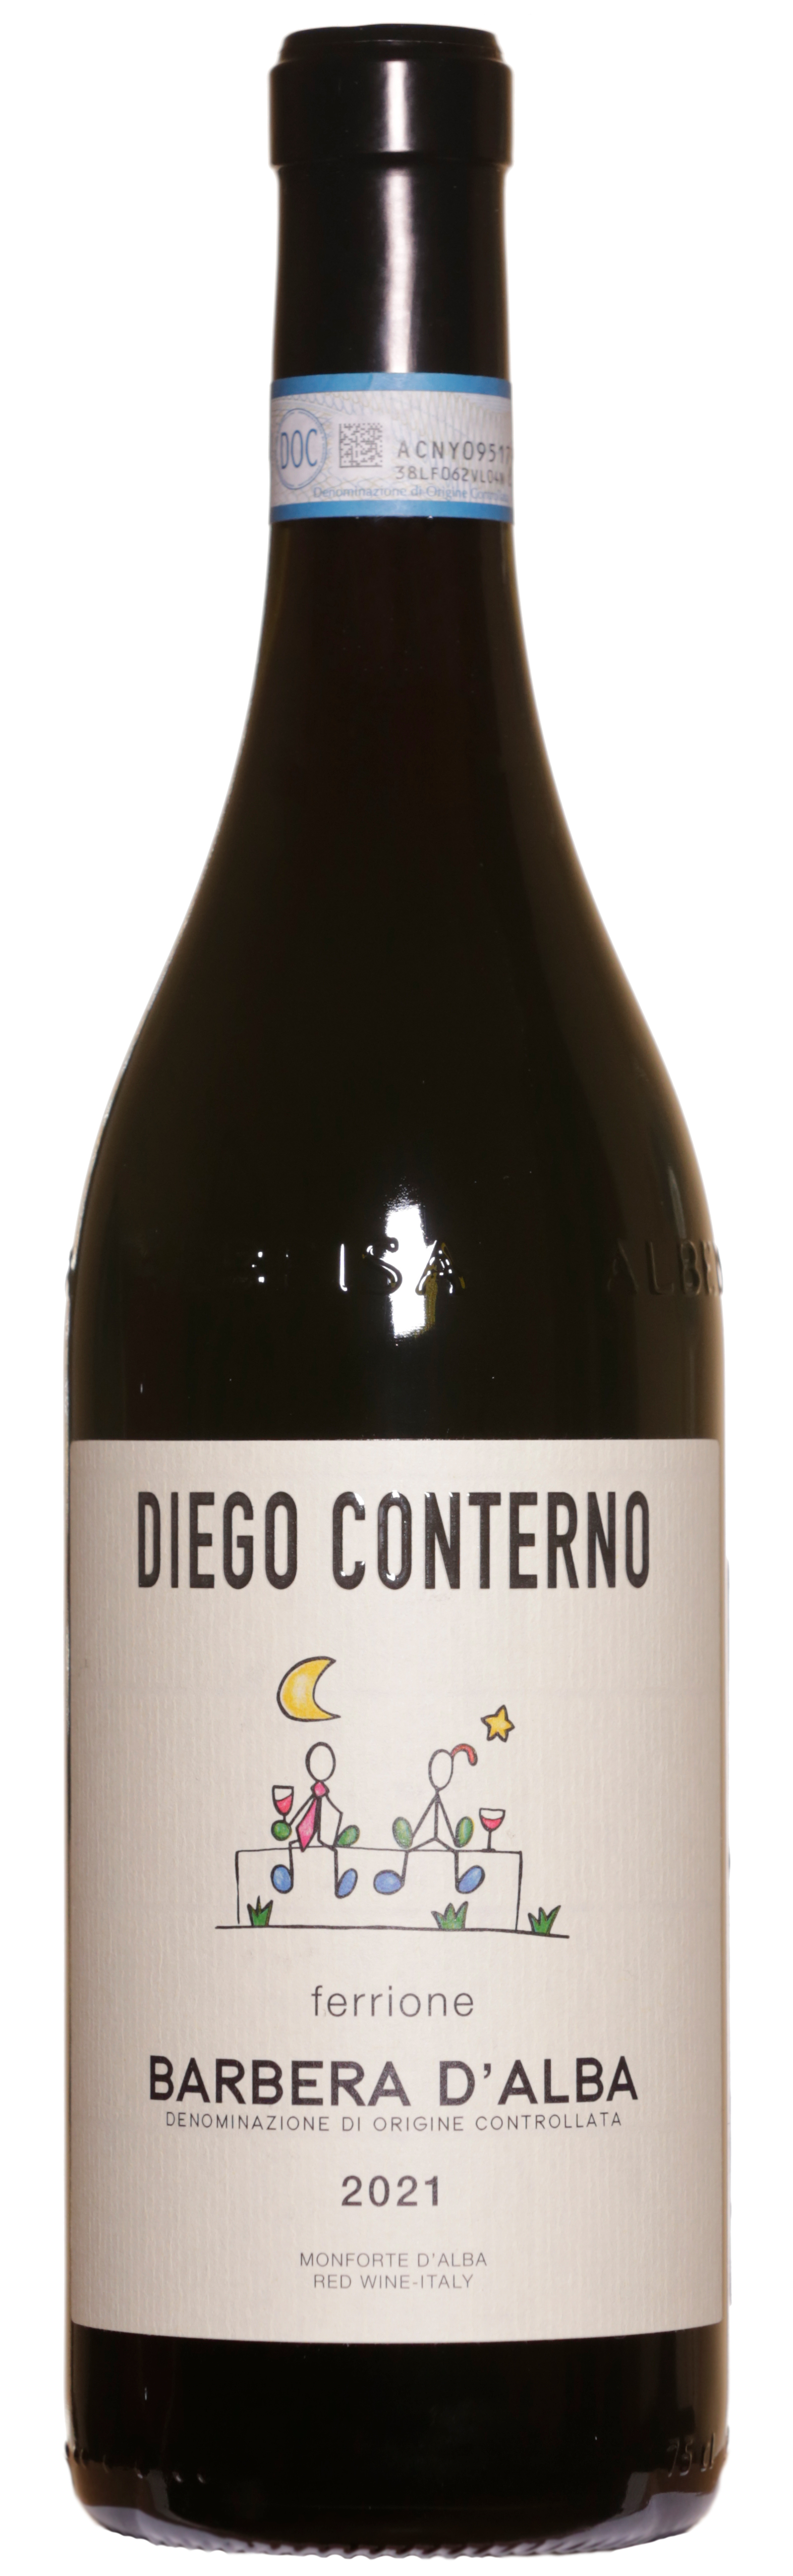 Wine Diego Conterno Barbera d'Alba Ferrione